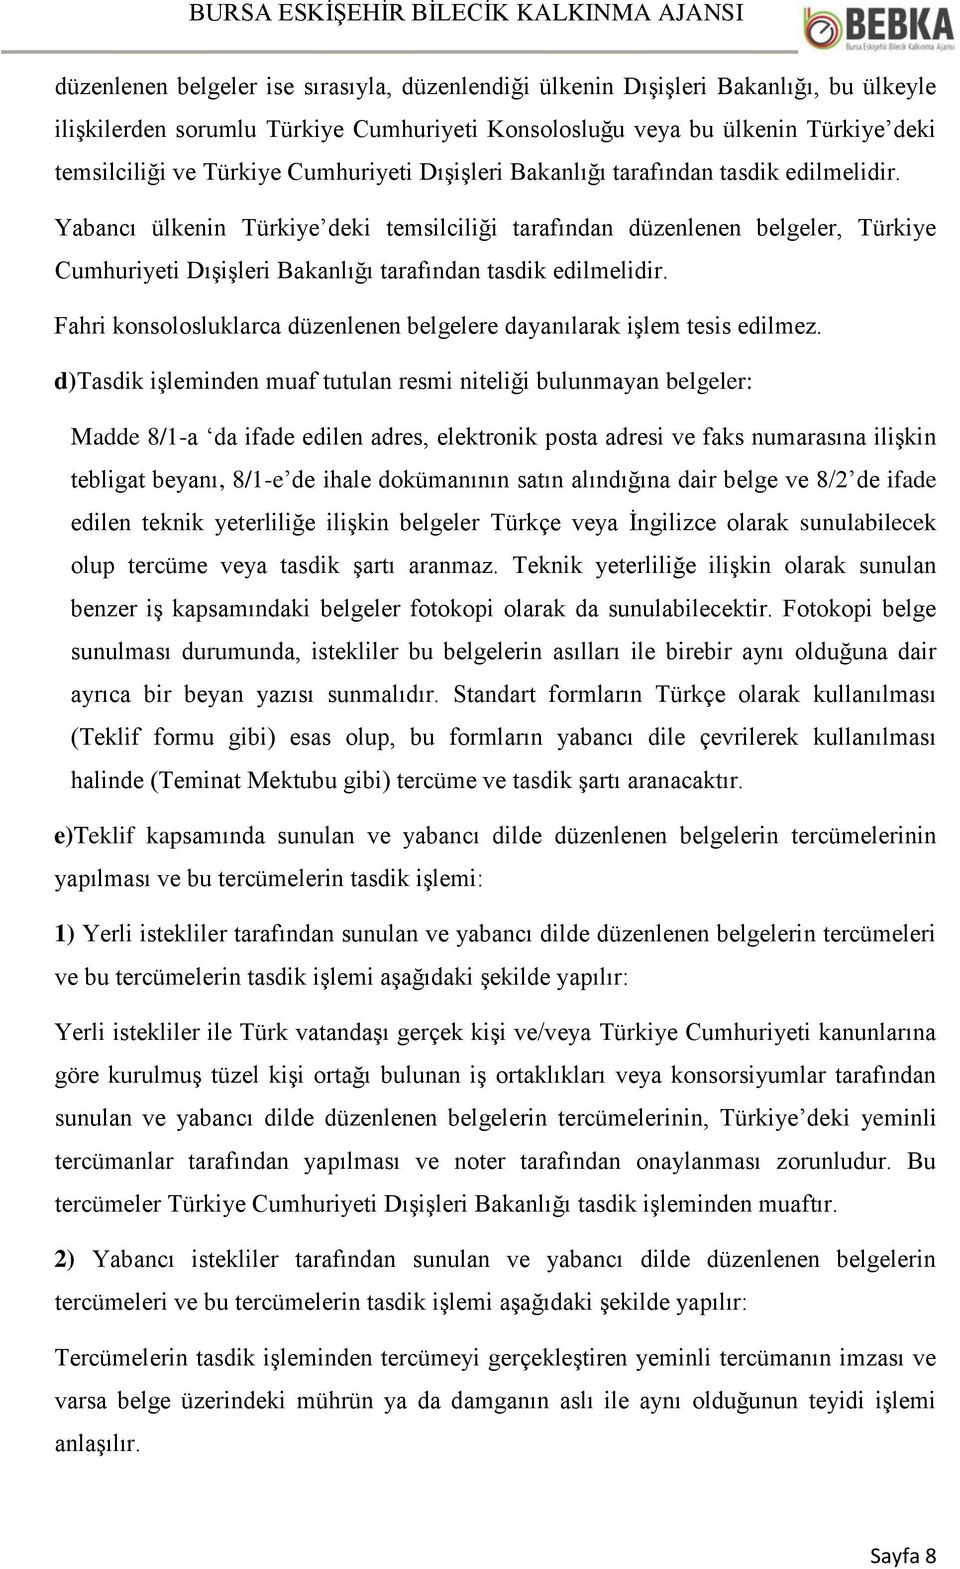 Yabancı ülkenin Türkiye deki temsilciliği tarafından düzenlenen belgeler, Türkiye  Fahri konsolosluklarca düzenlenen belgelere dayanılarak işlem tesis edilmez.